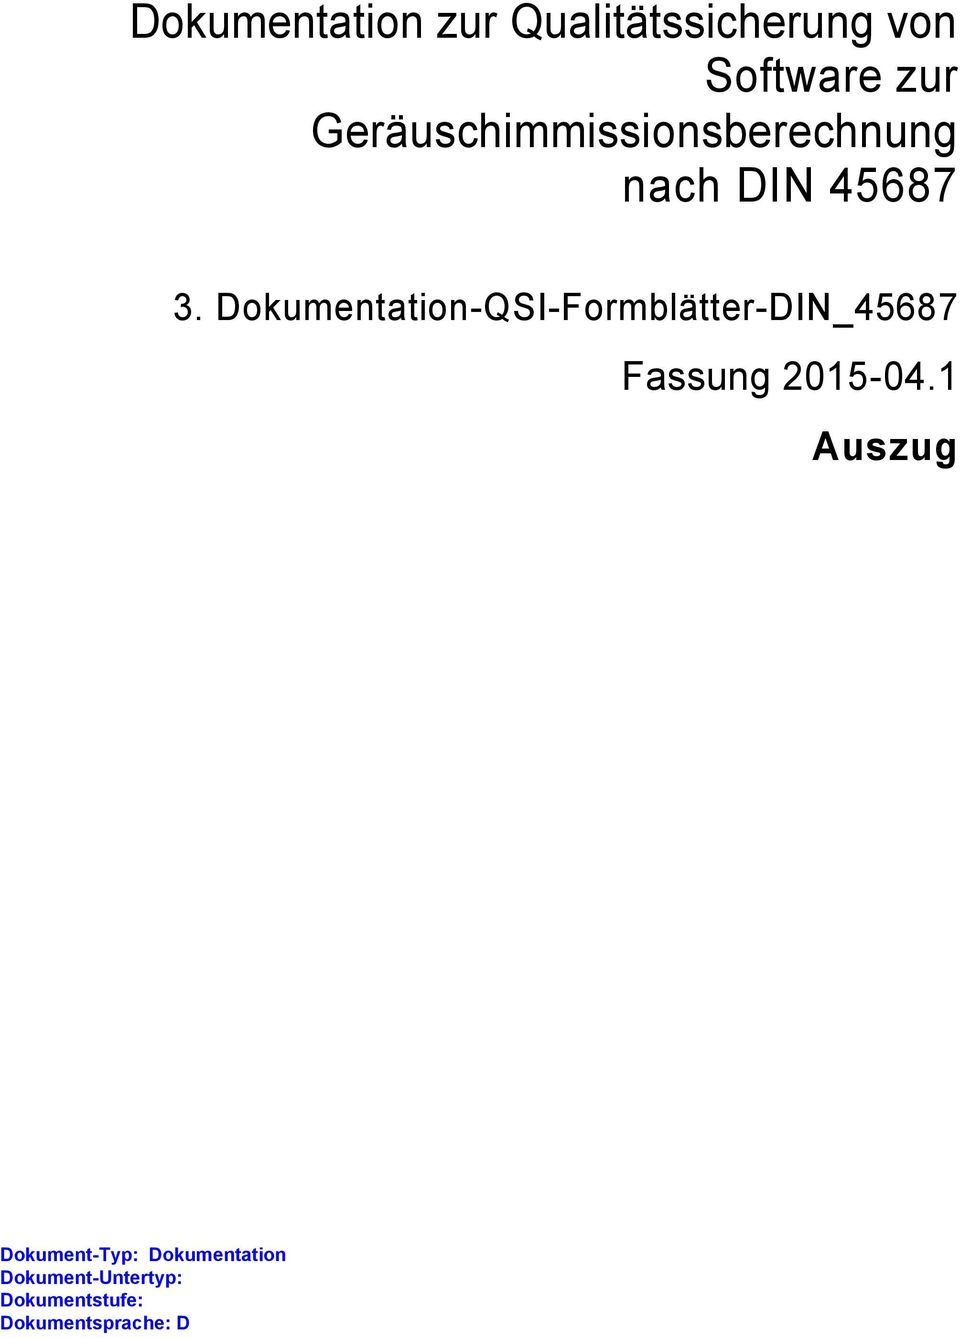 Dokumentation-QSI-Formblätter-DIN_45687 Fassung 2015-04.